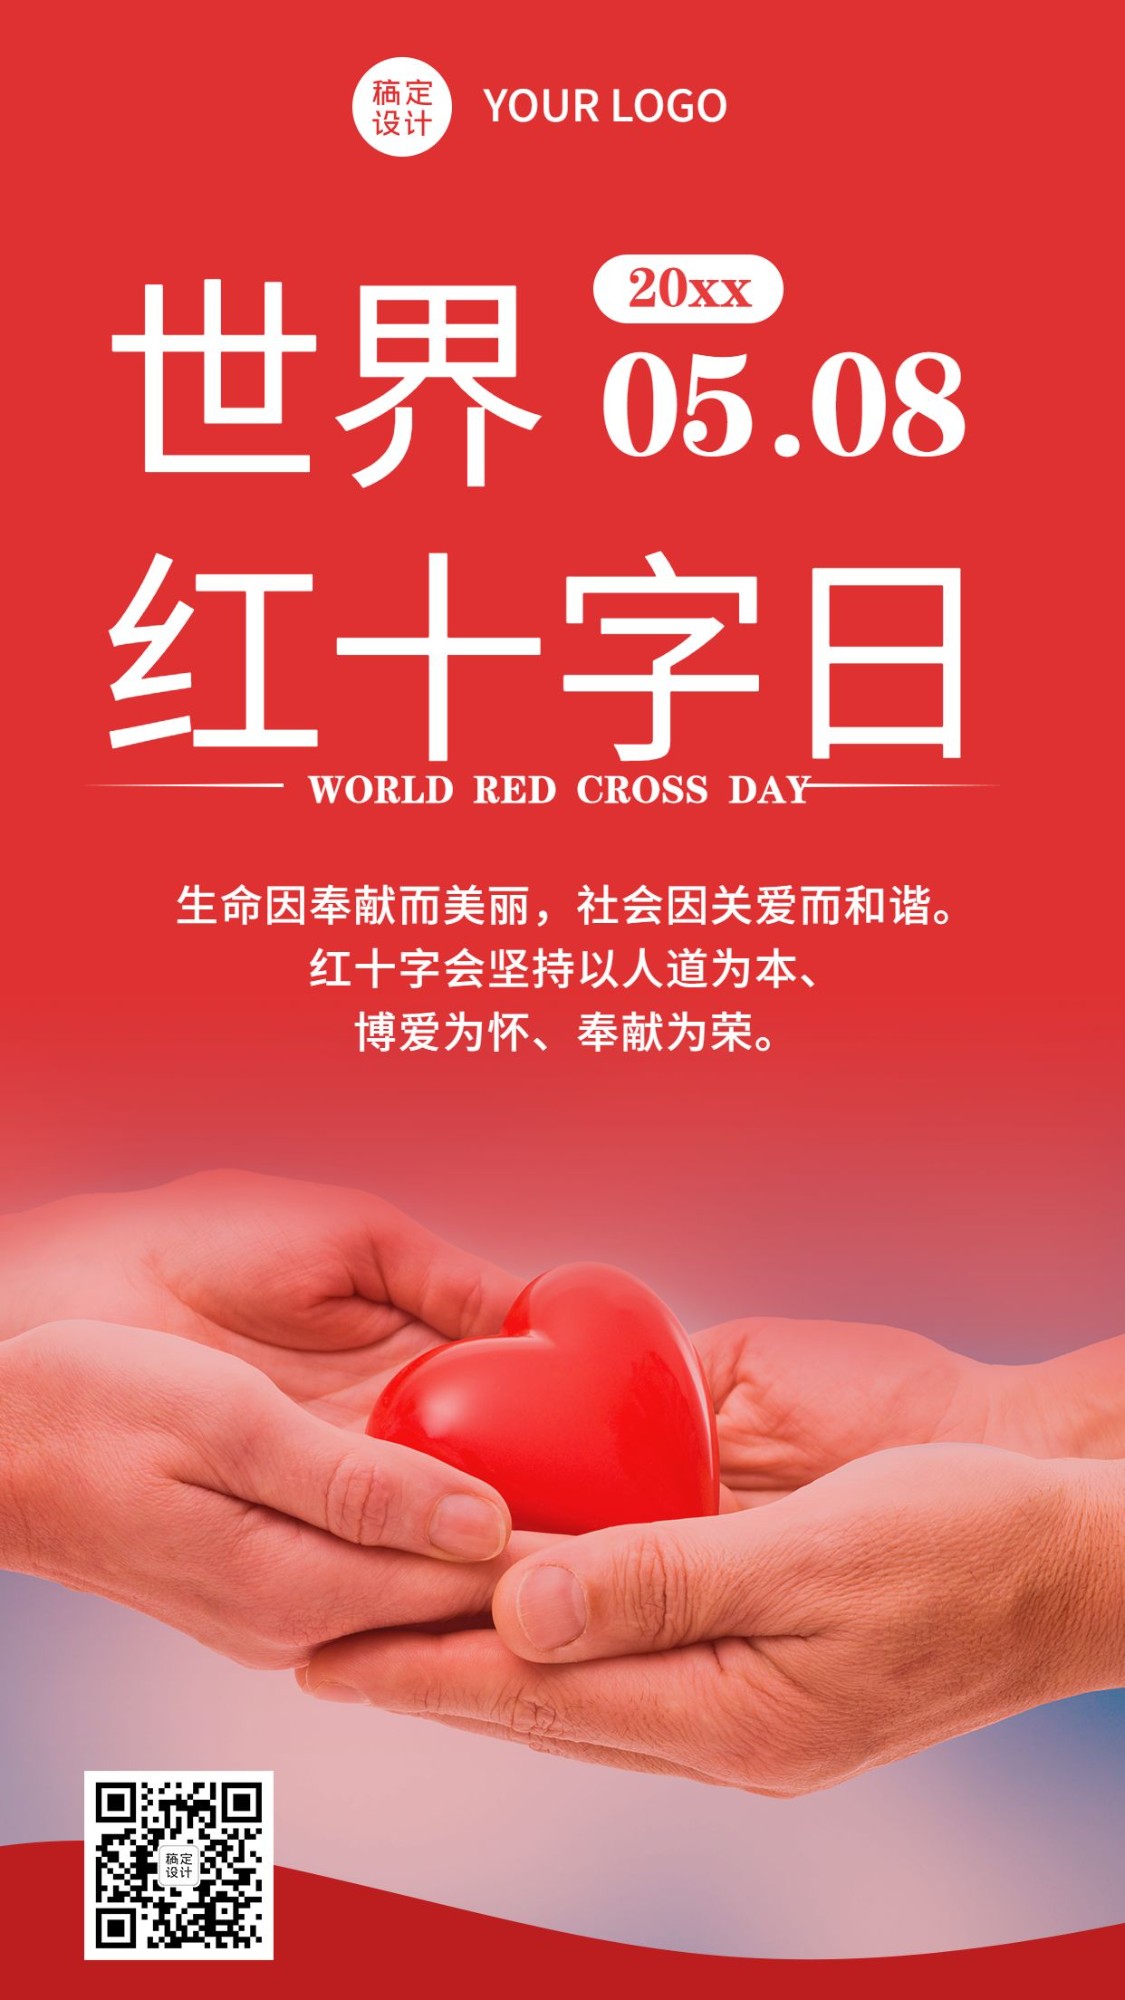 世界红十字日医疗援助公益手机海报预览效果